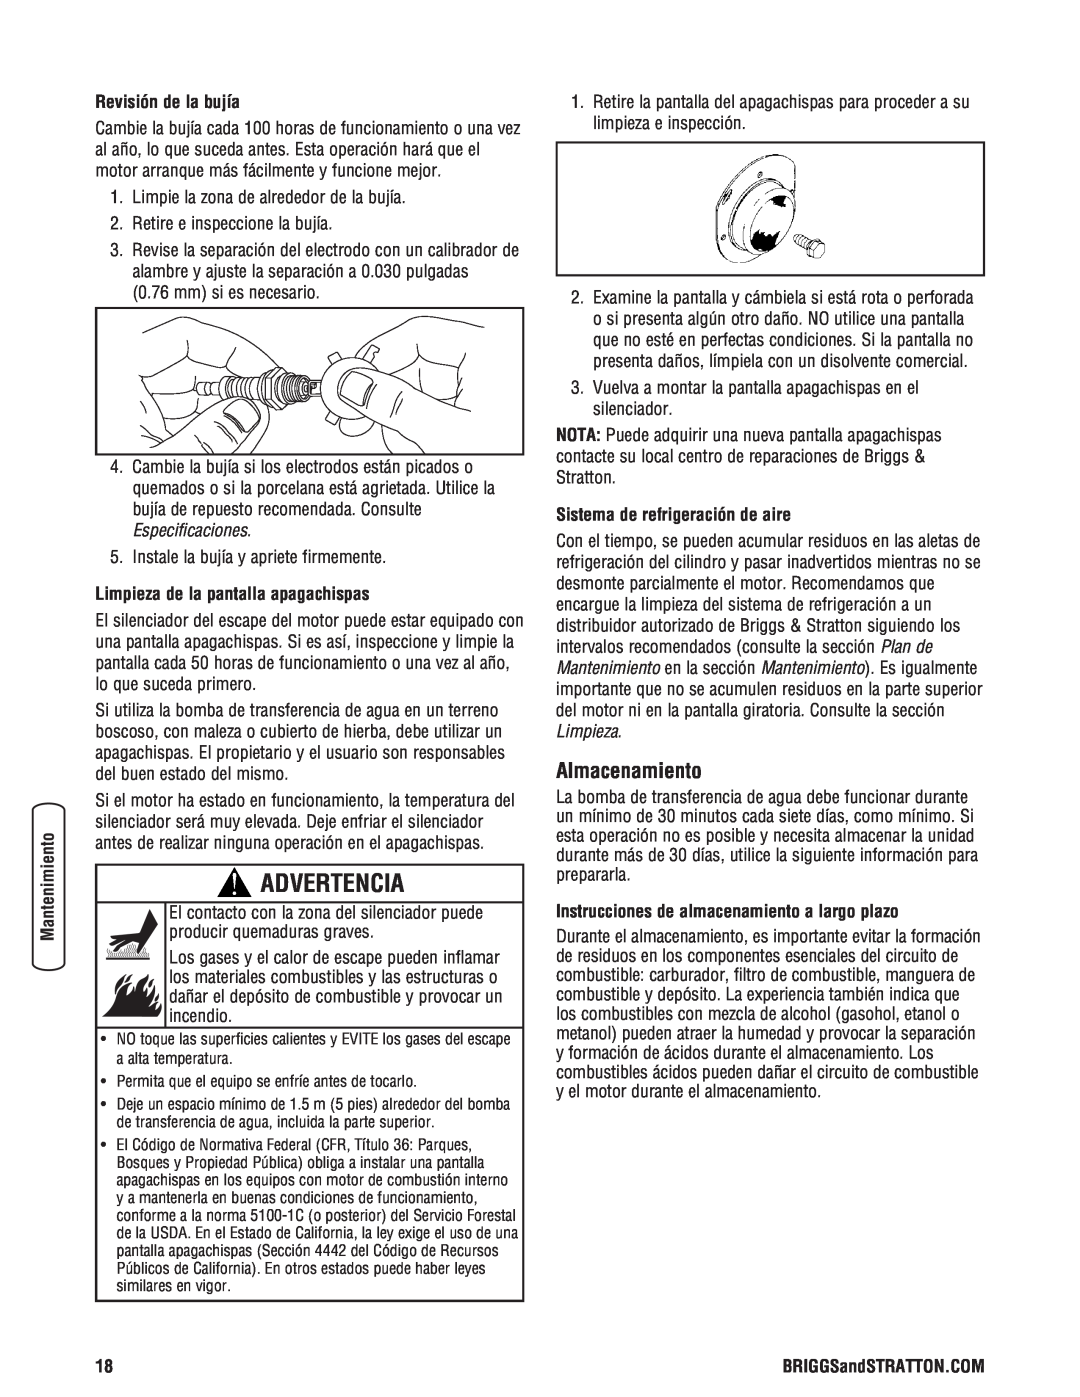 Briggs & Stratton Water Transfer Pump manual Almacenamiento, Revisión de la bujía, Limpieza de la pantalla apagachispas 